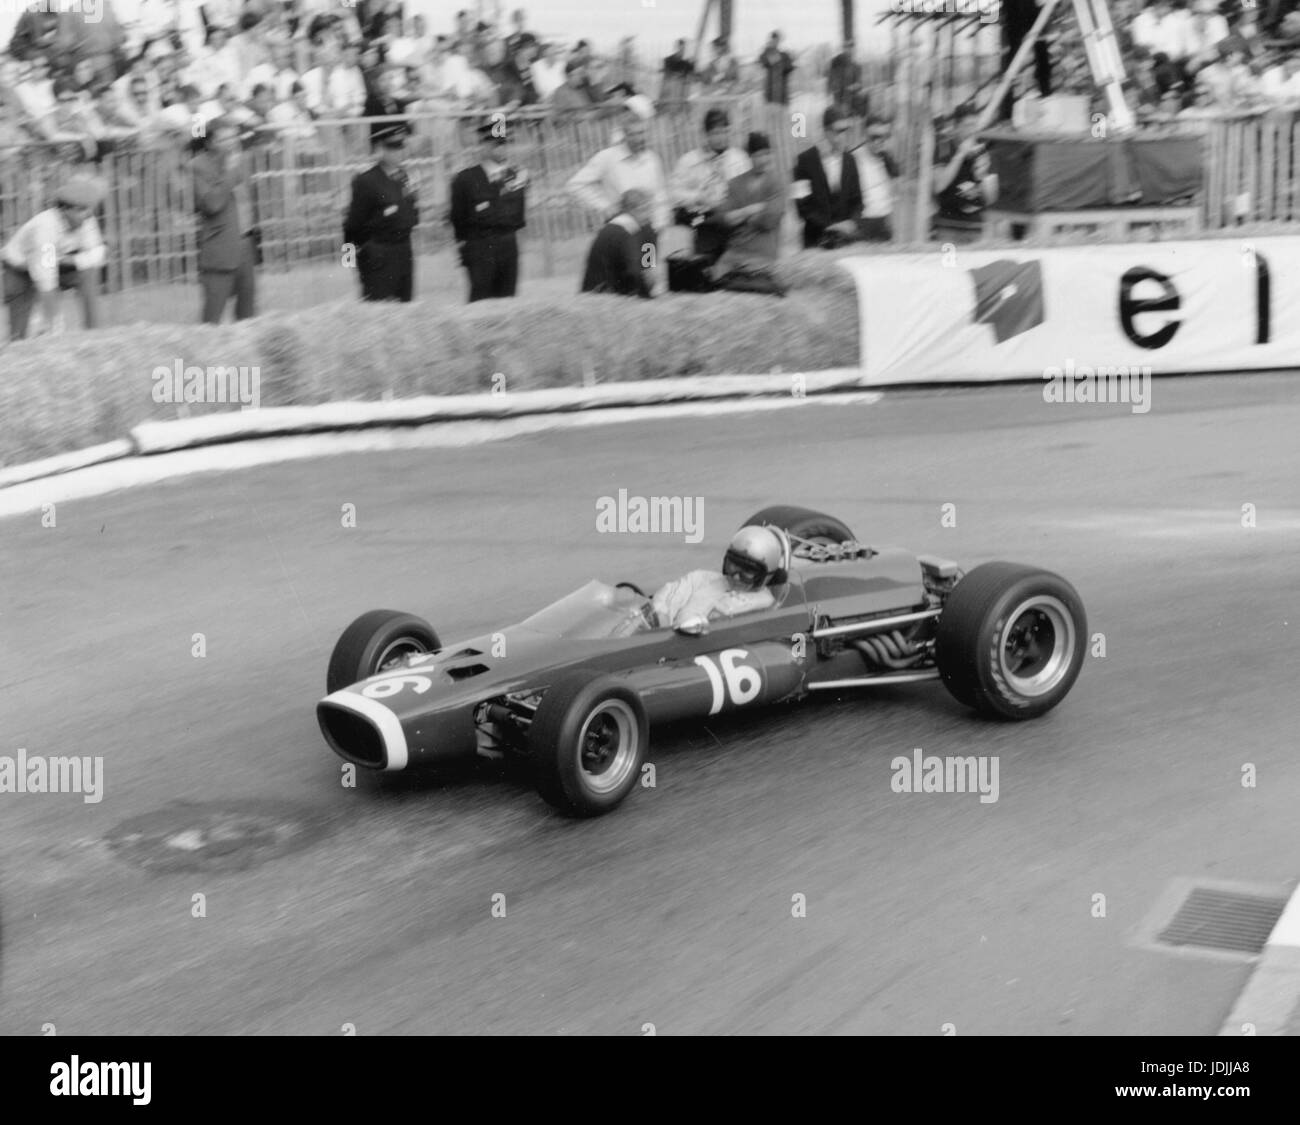 McLaren BRM, Bruce McLaren 1967 Monaco Grand Prix Stock Photo